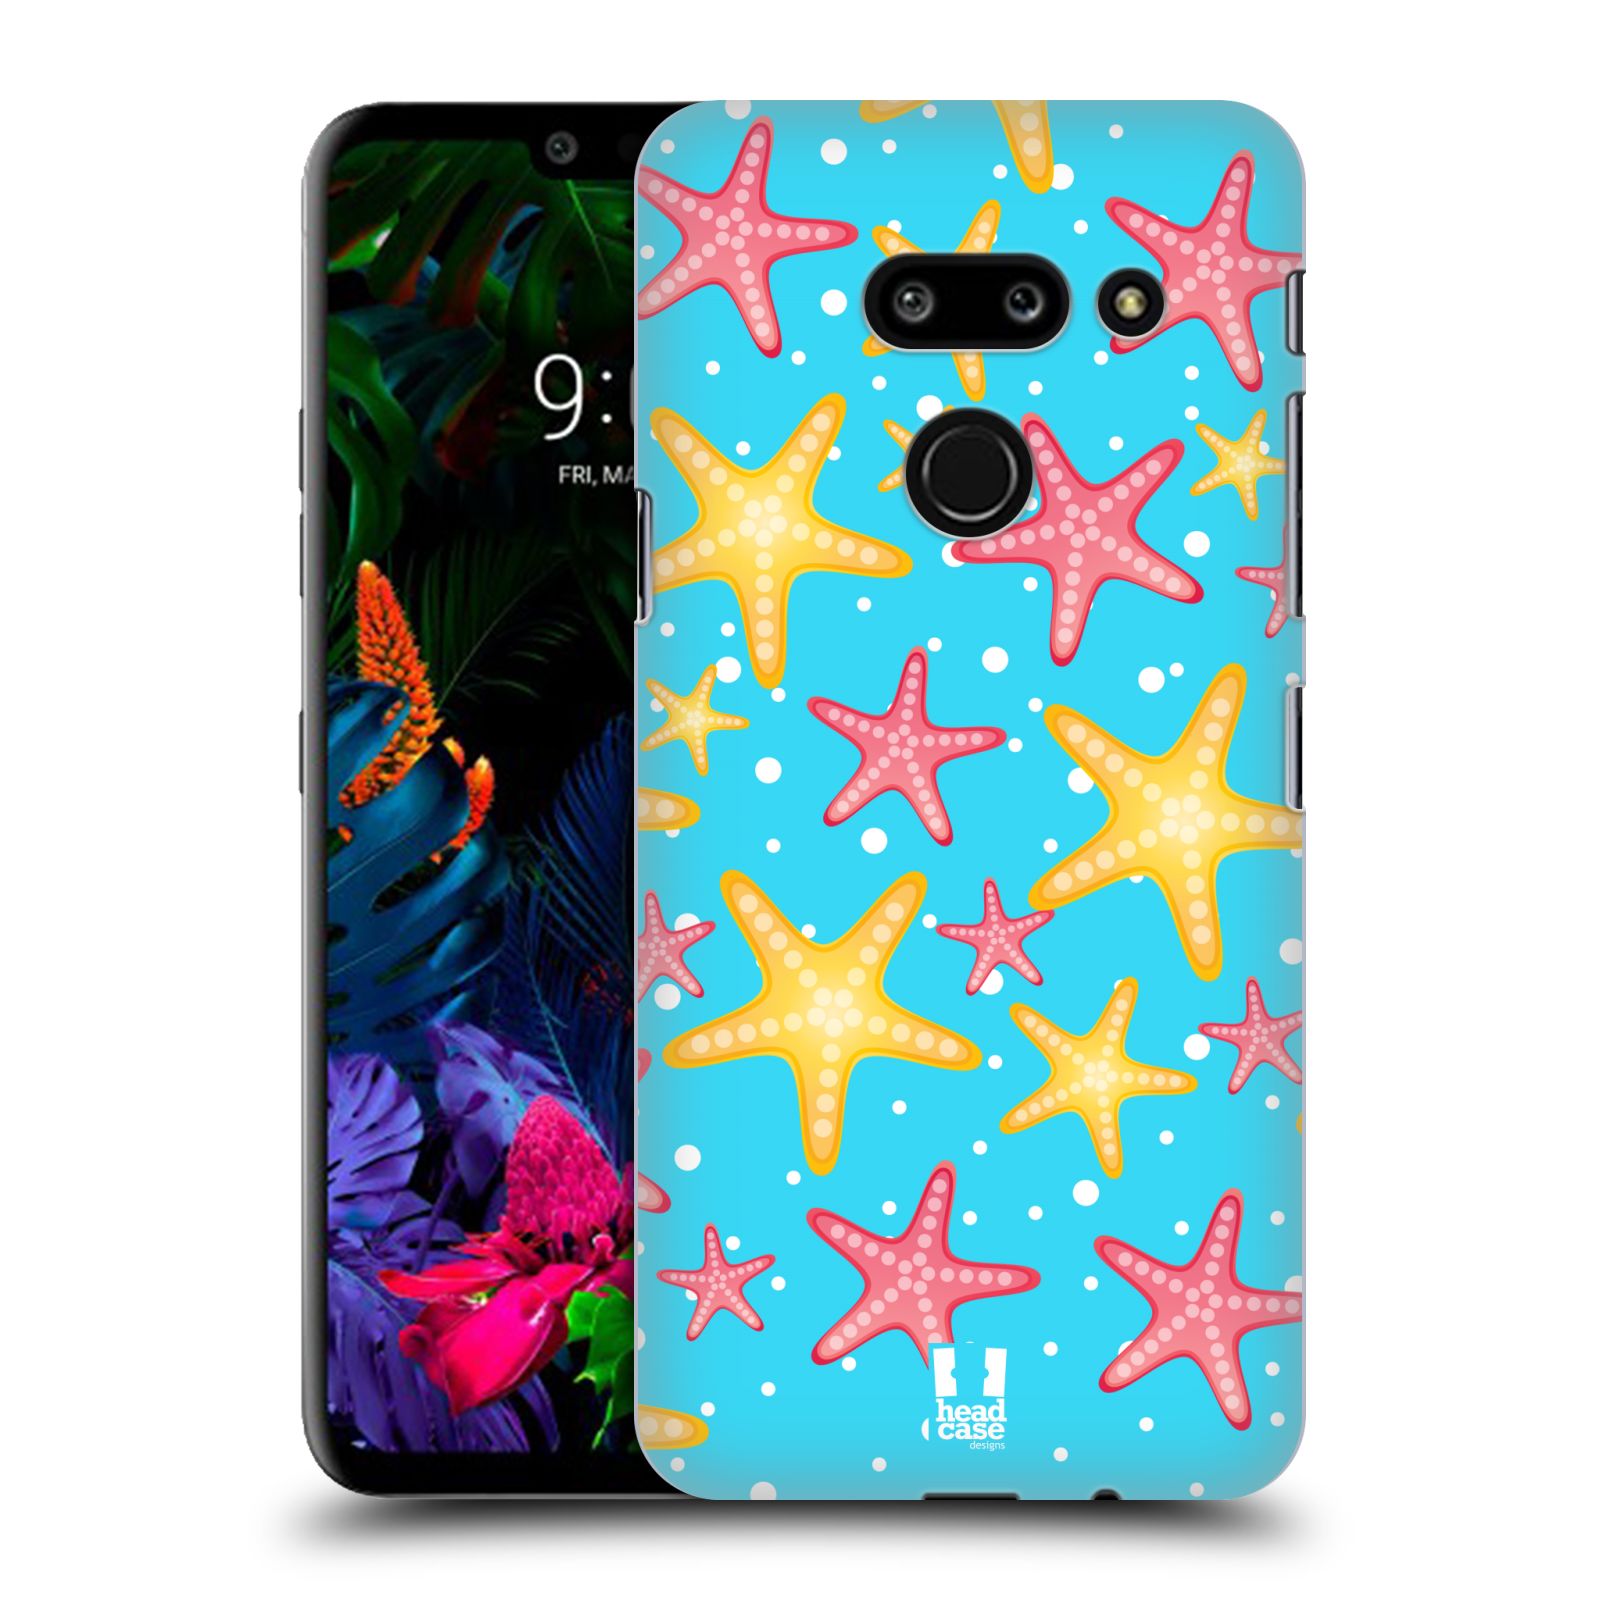 Zadní obal pro mobil LG G8 ThinQ - HEAD CASE - kreslený mořský vzor hvězda